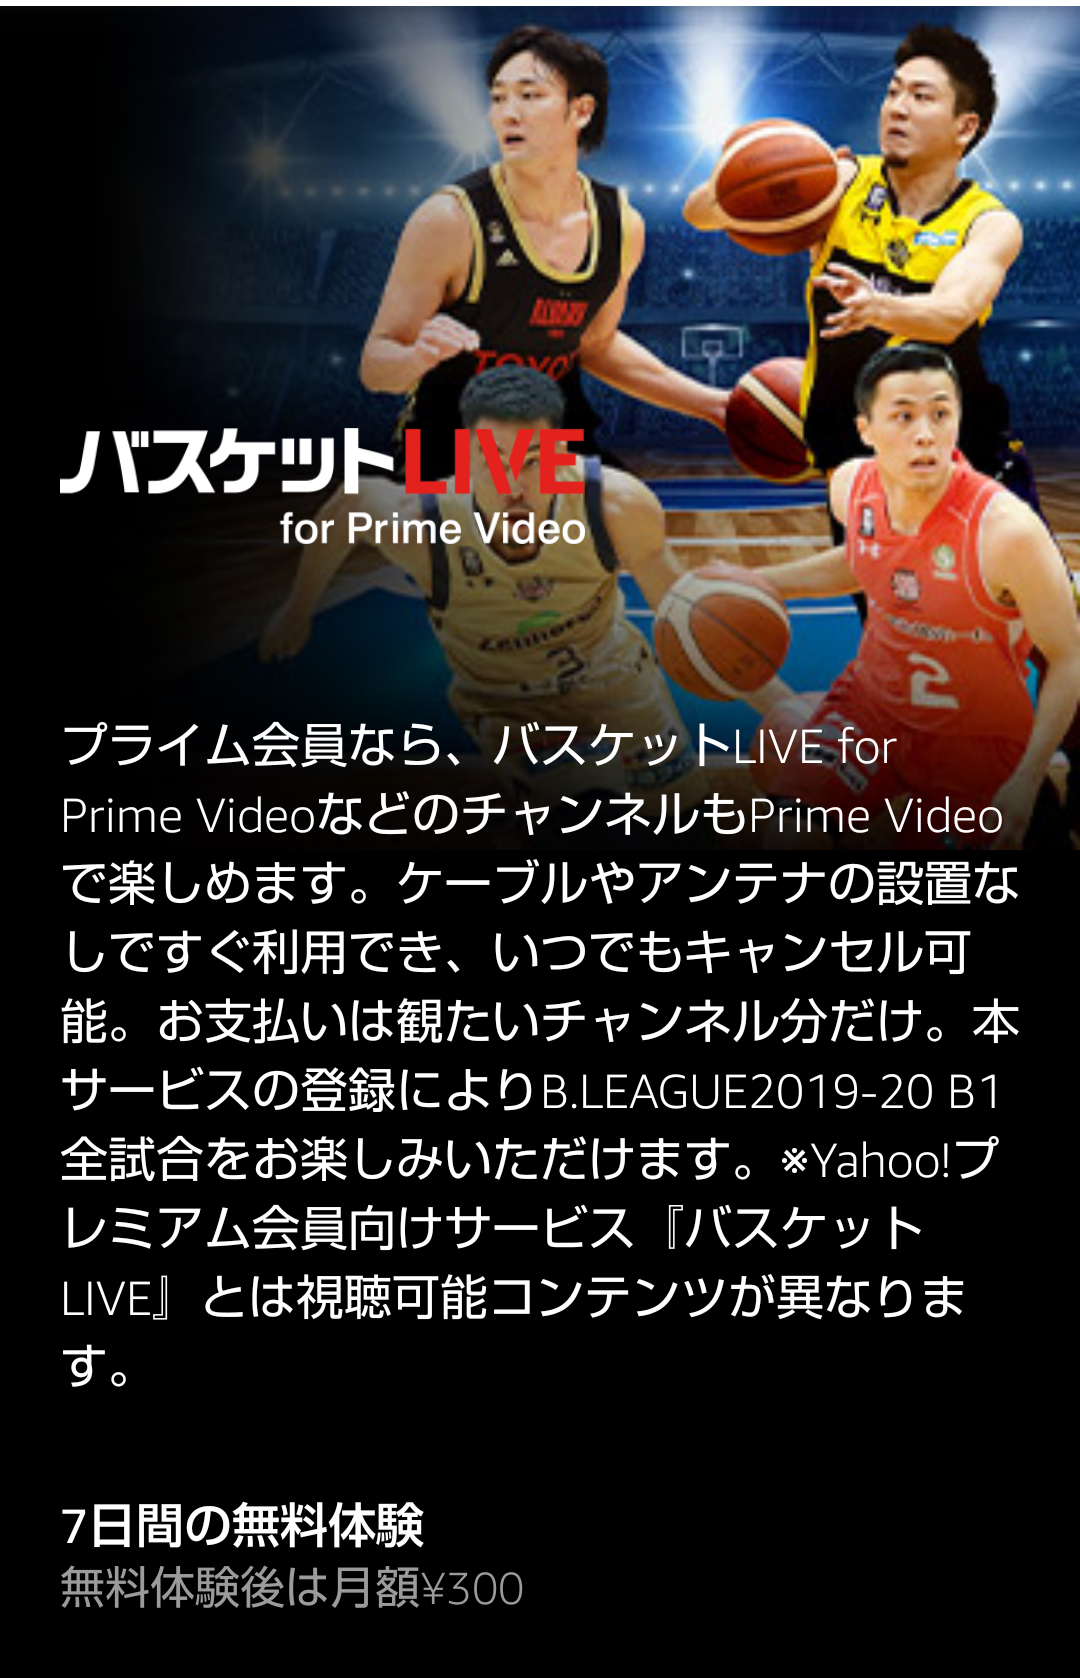 【速報】バスケットLIVE、Amazonプライムにチャンネル開設。 | 放映権事情を妄想しながらスポーツ中継を楽しむ